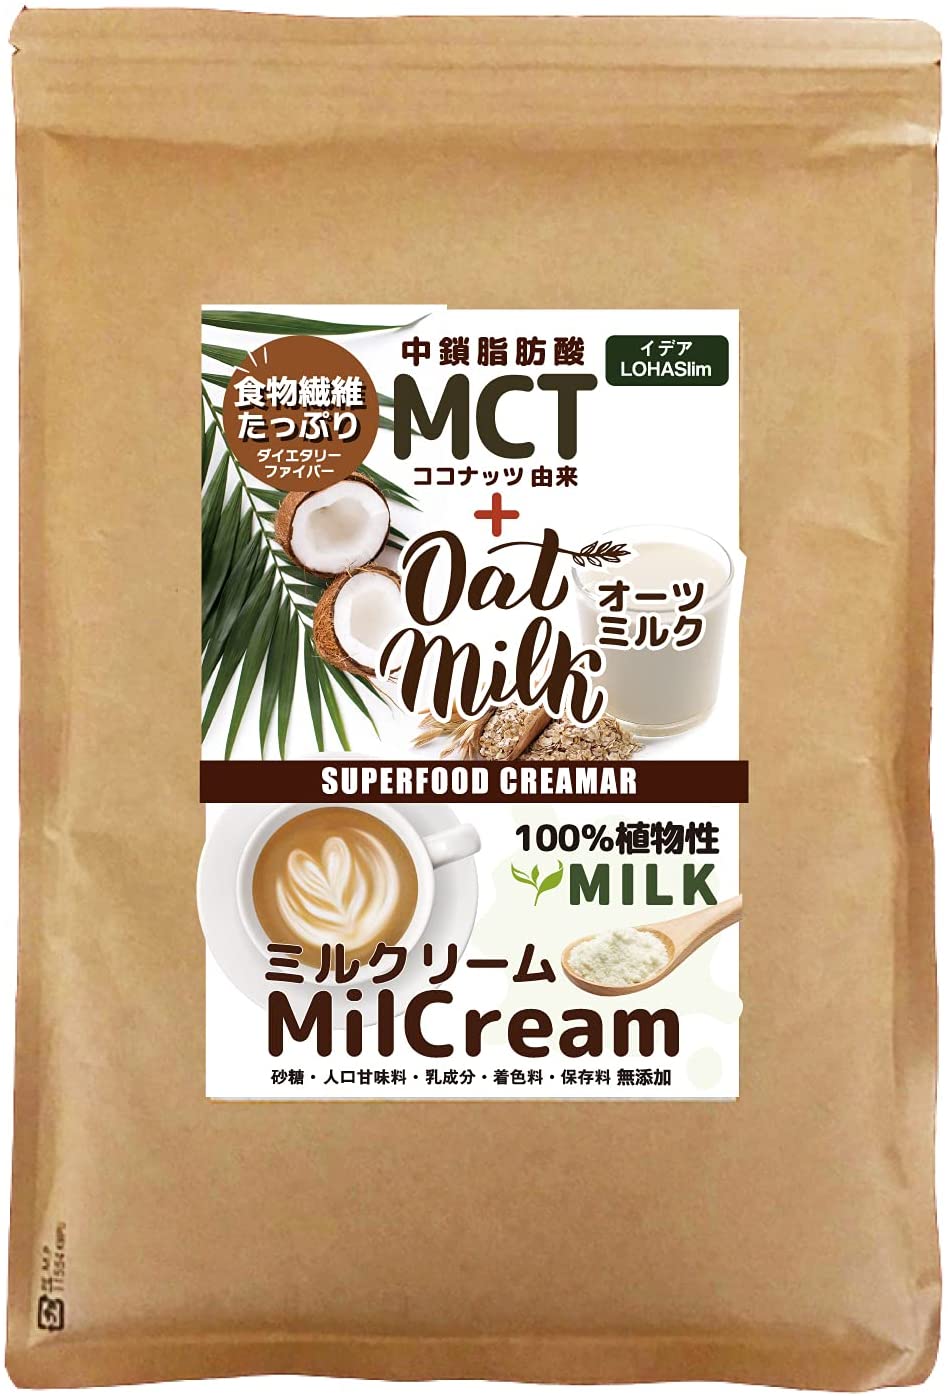 イデア MCT オーツミルク